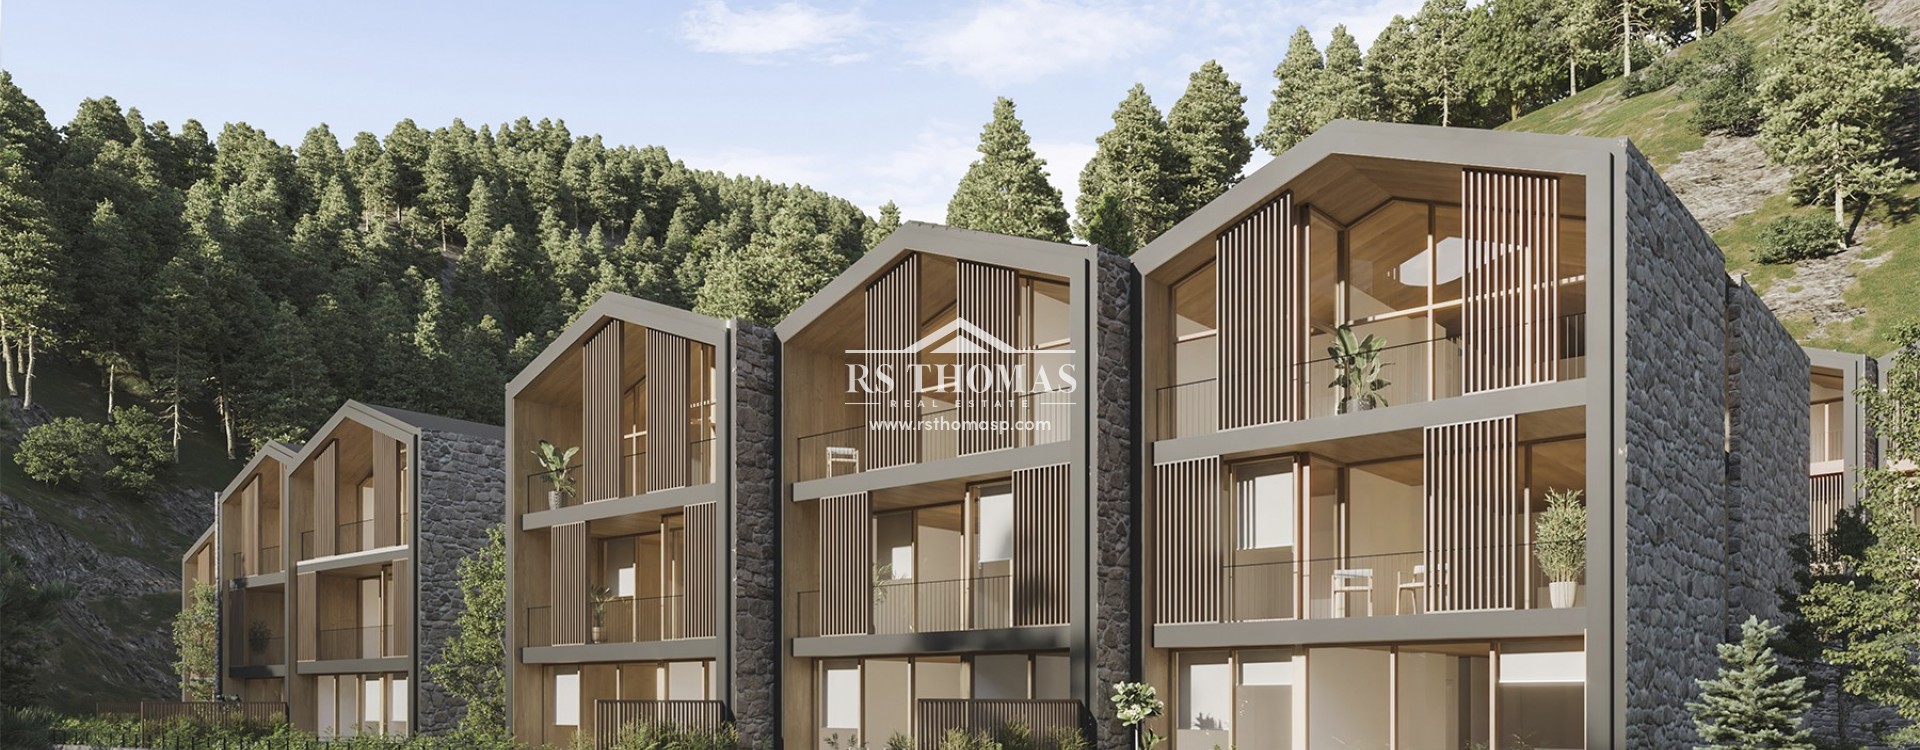 1550 Village Resort | RS Thomas Real Estate | RS451